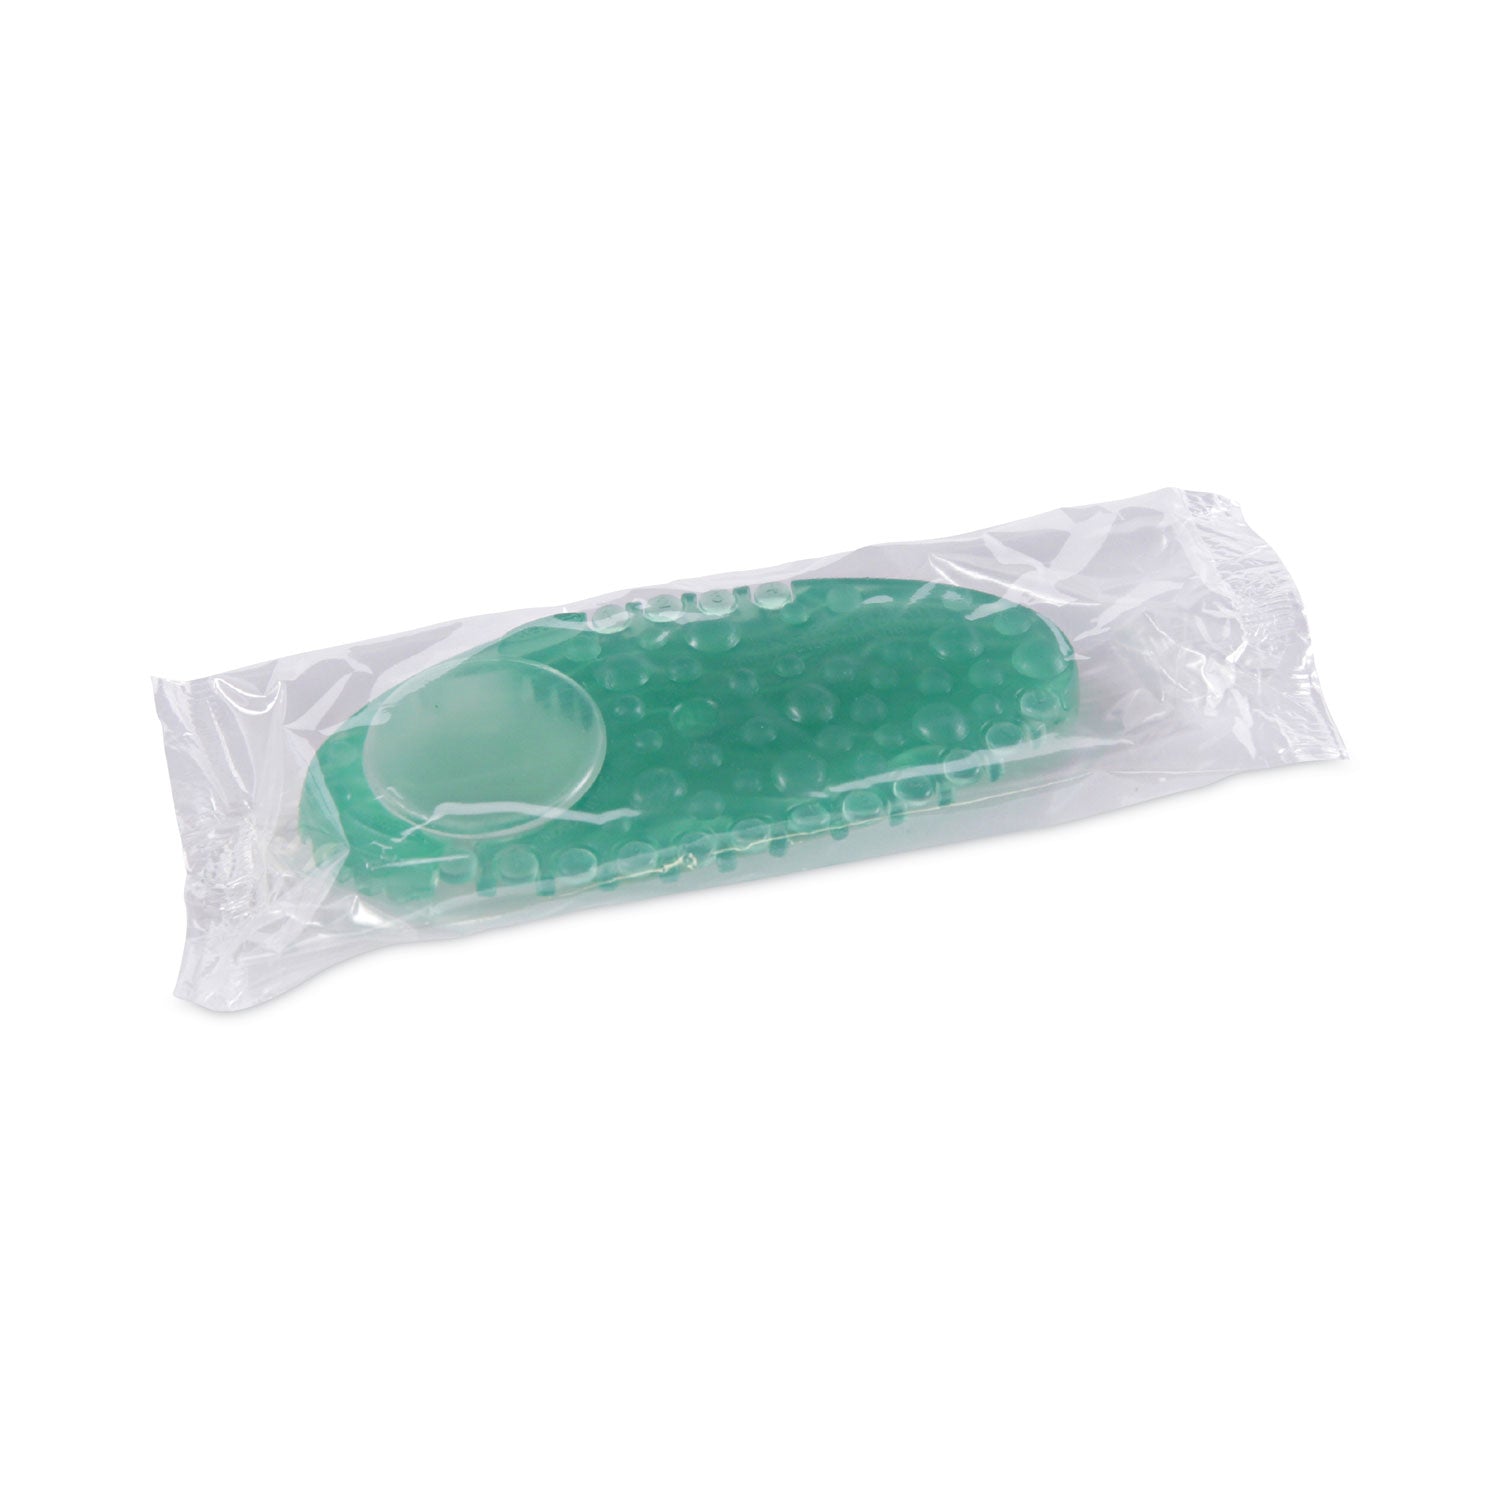 Curve Air Freshener, Cucumber Melon, Green, 10/Box, 6 Boxes/Carton - 